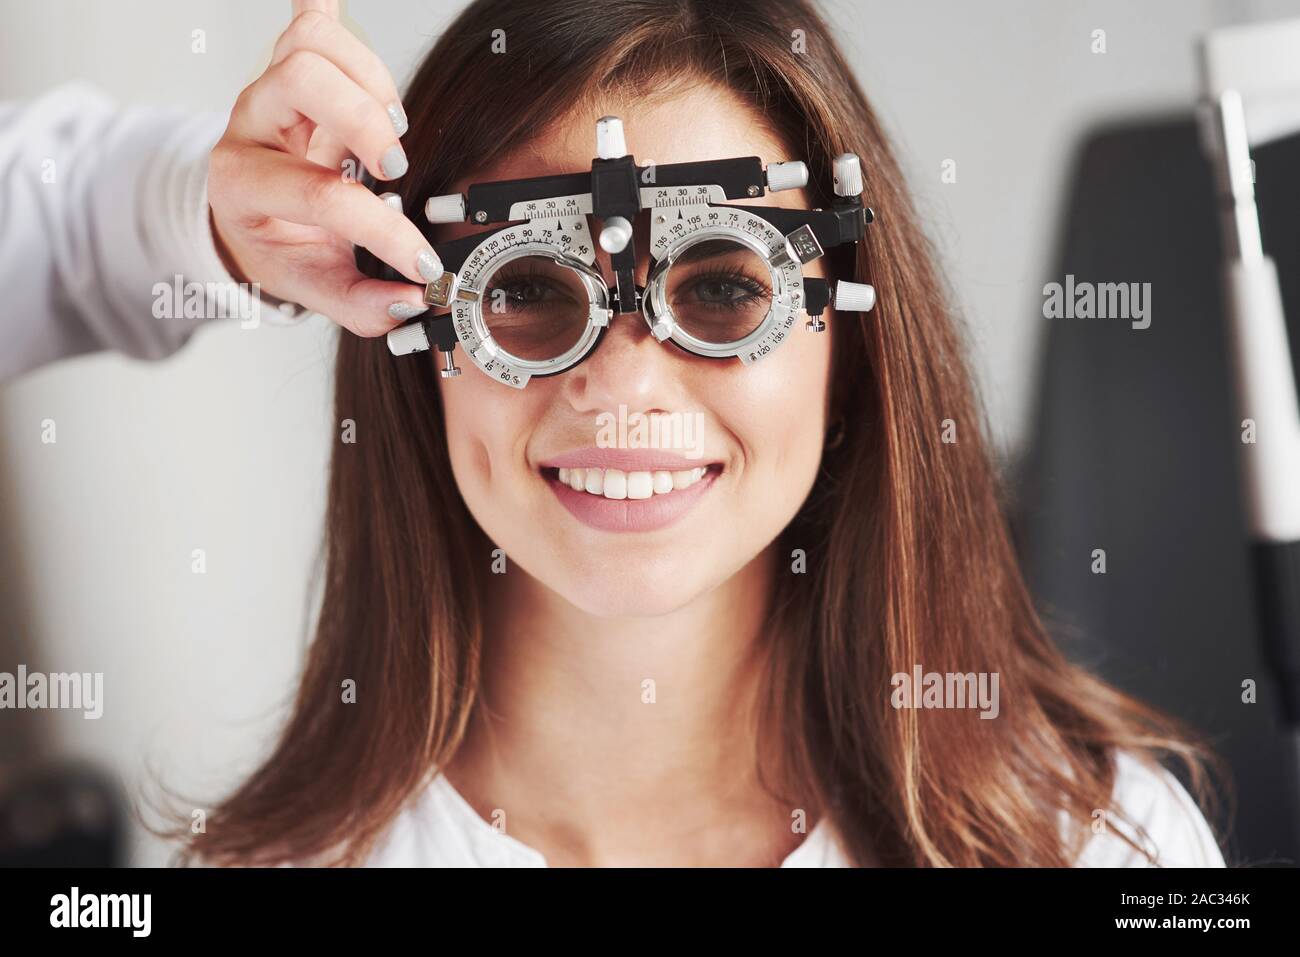 Attraente ragazza sorridente mentre phoropter usura che ottieni tune dal medico Foto Stock